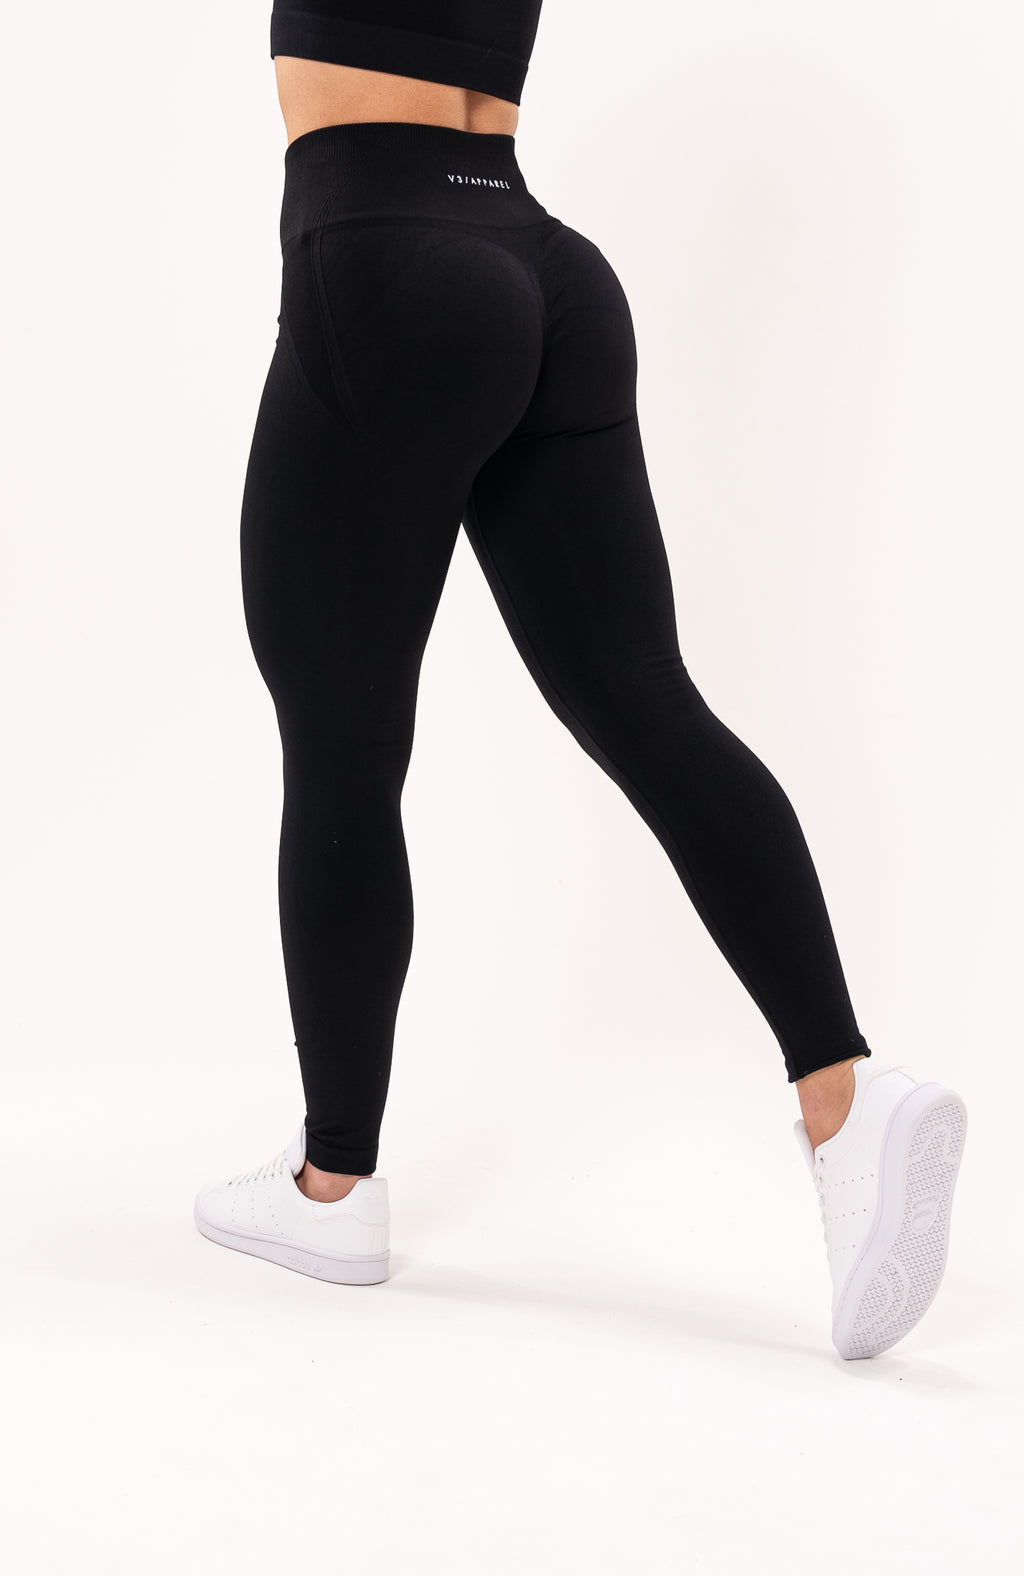 V Back Scrunch Leggings Soft Butt Lifting - Black